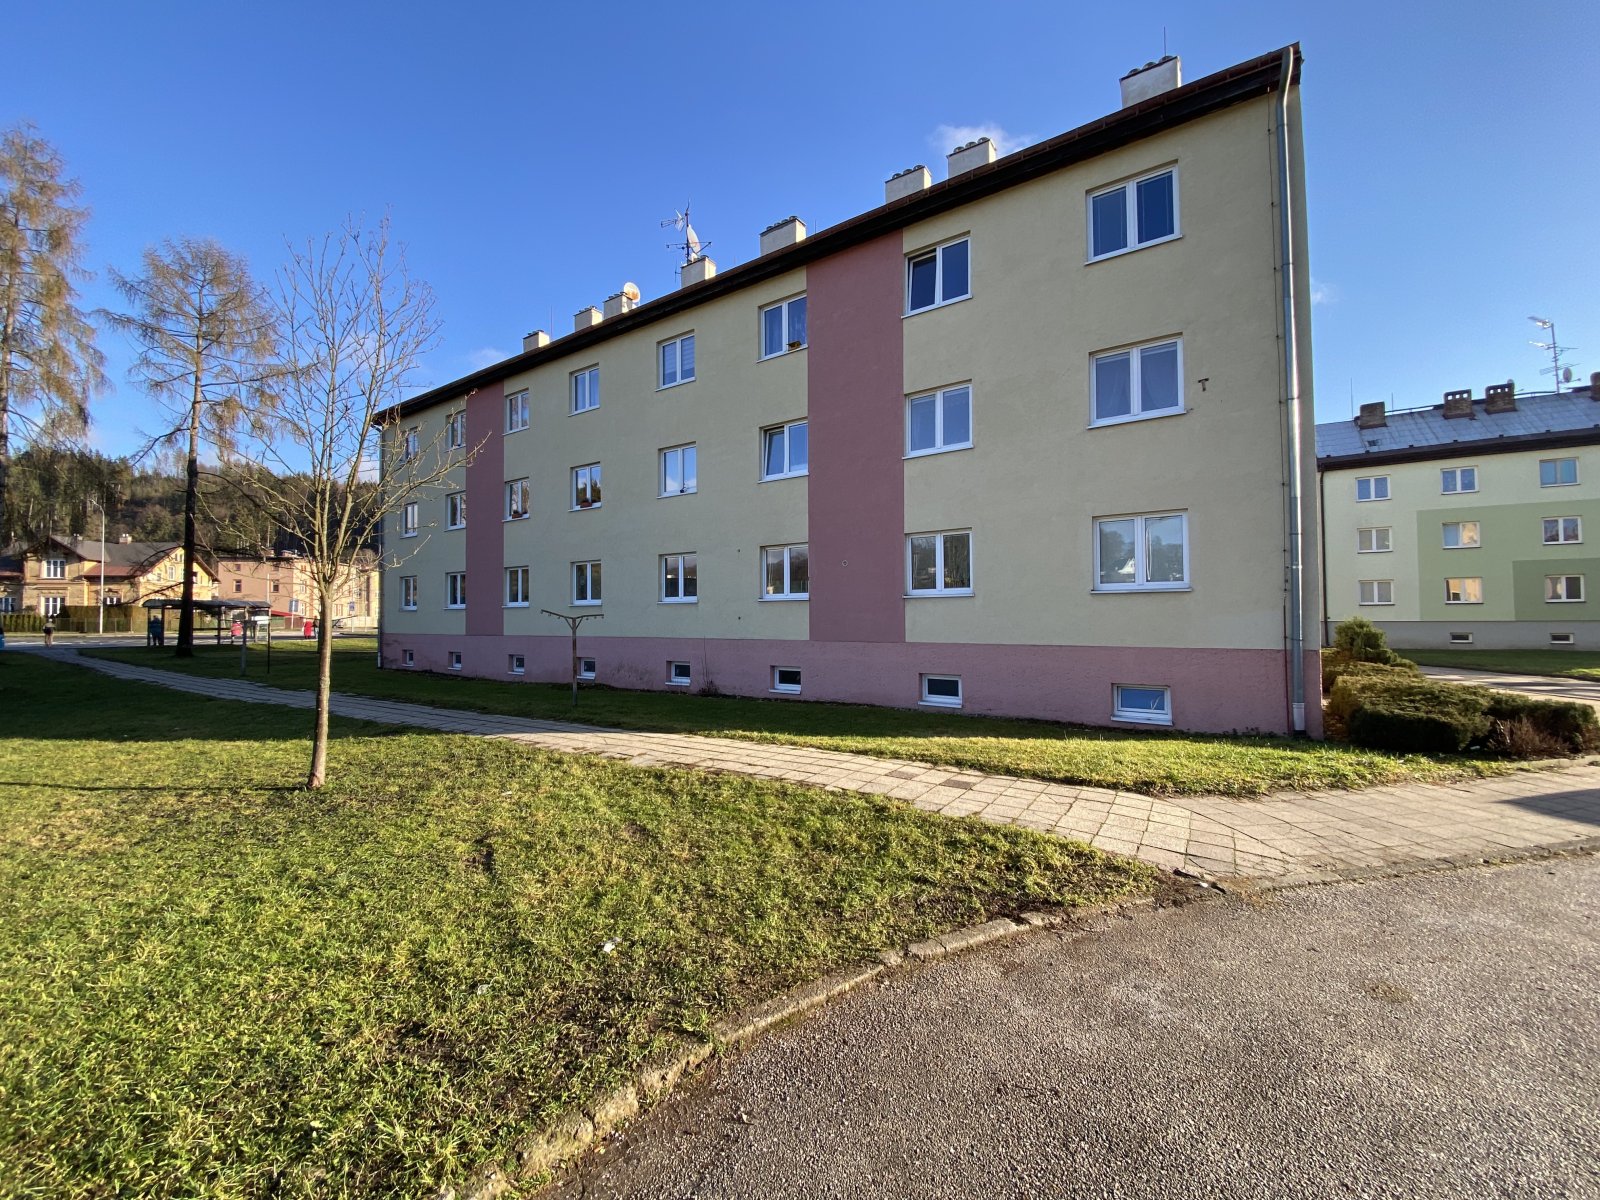 Rezervováno: Prodej bytu 1+1, ulice U Hřiště - Trutnov